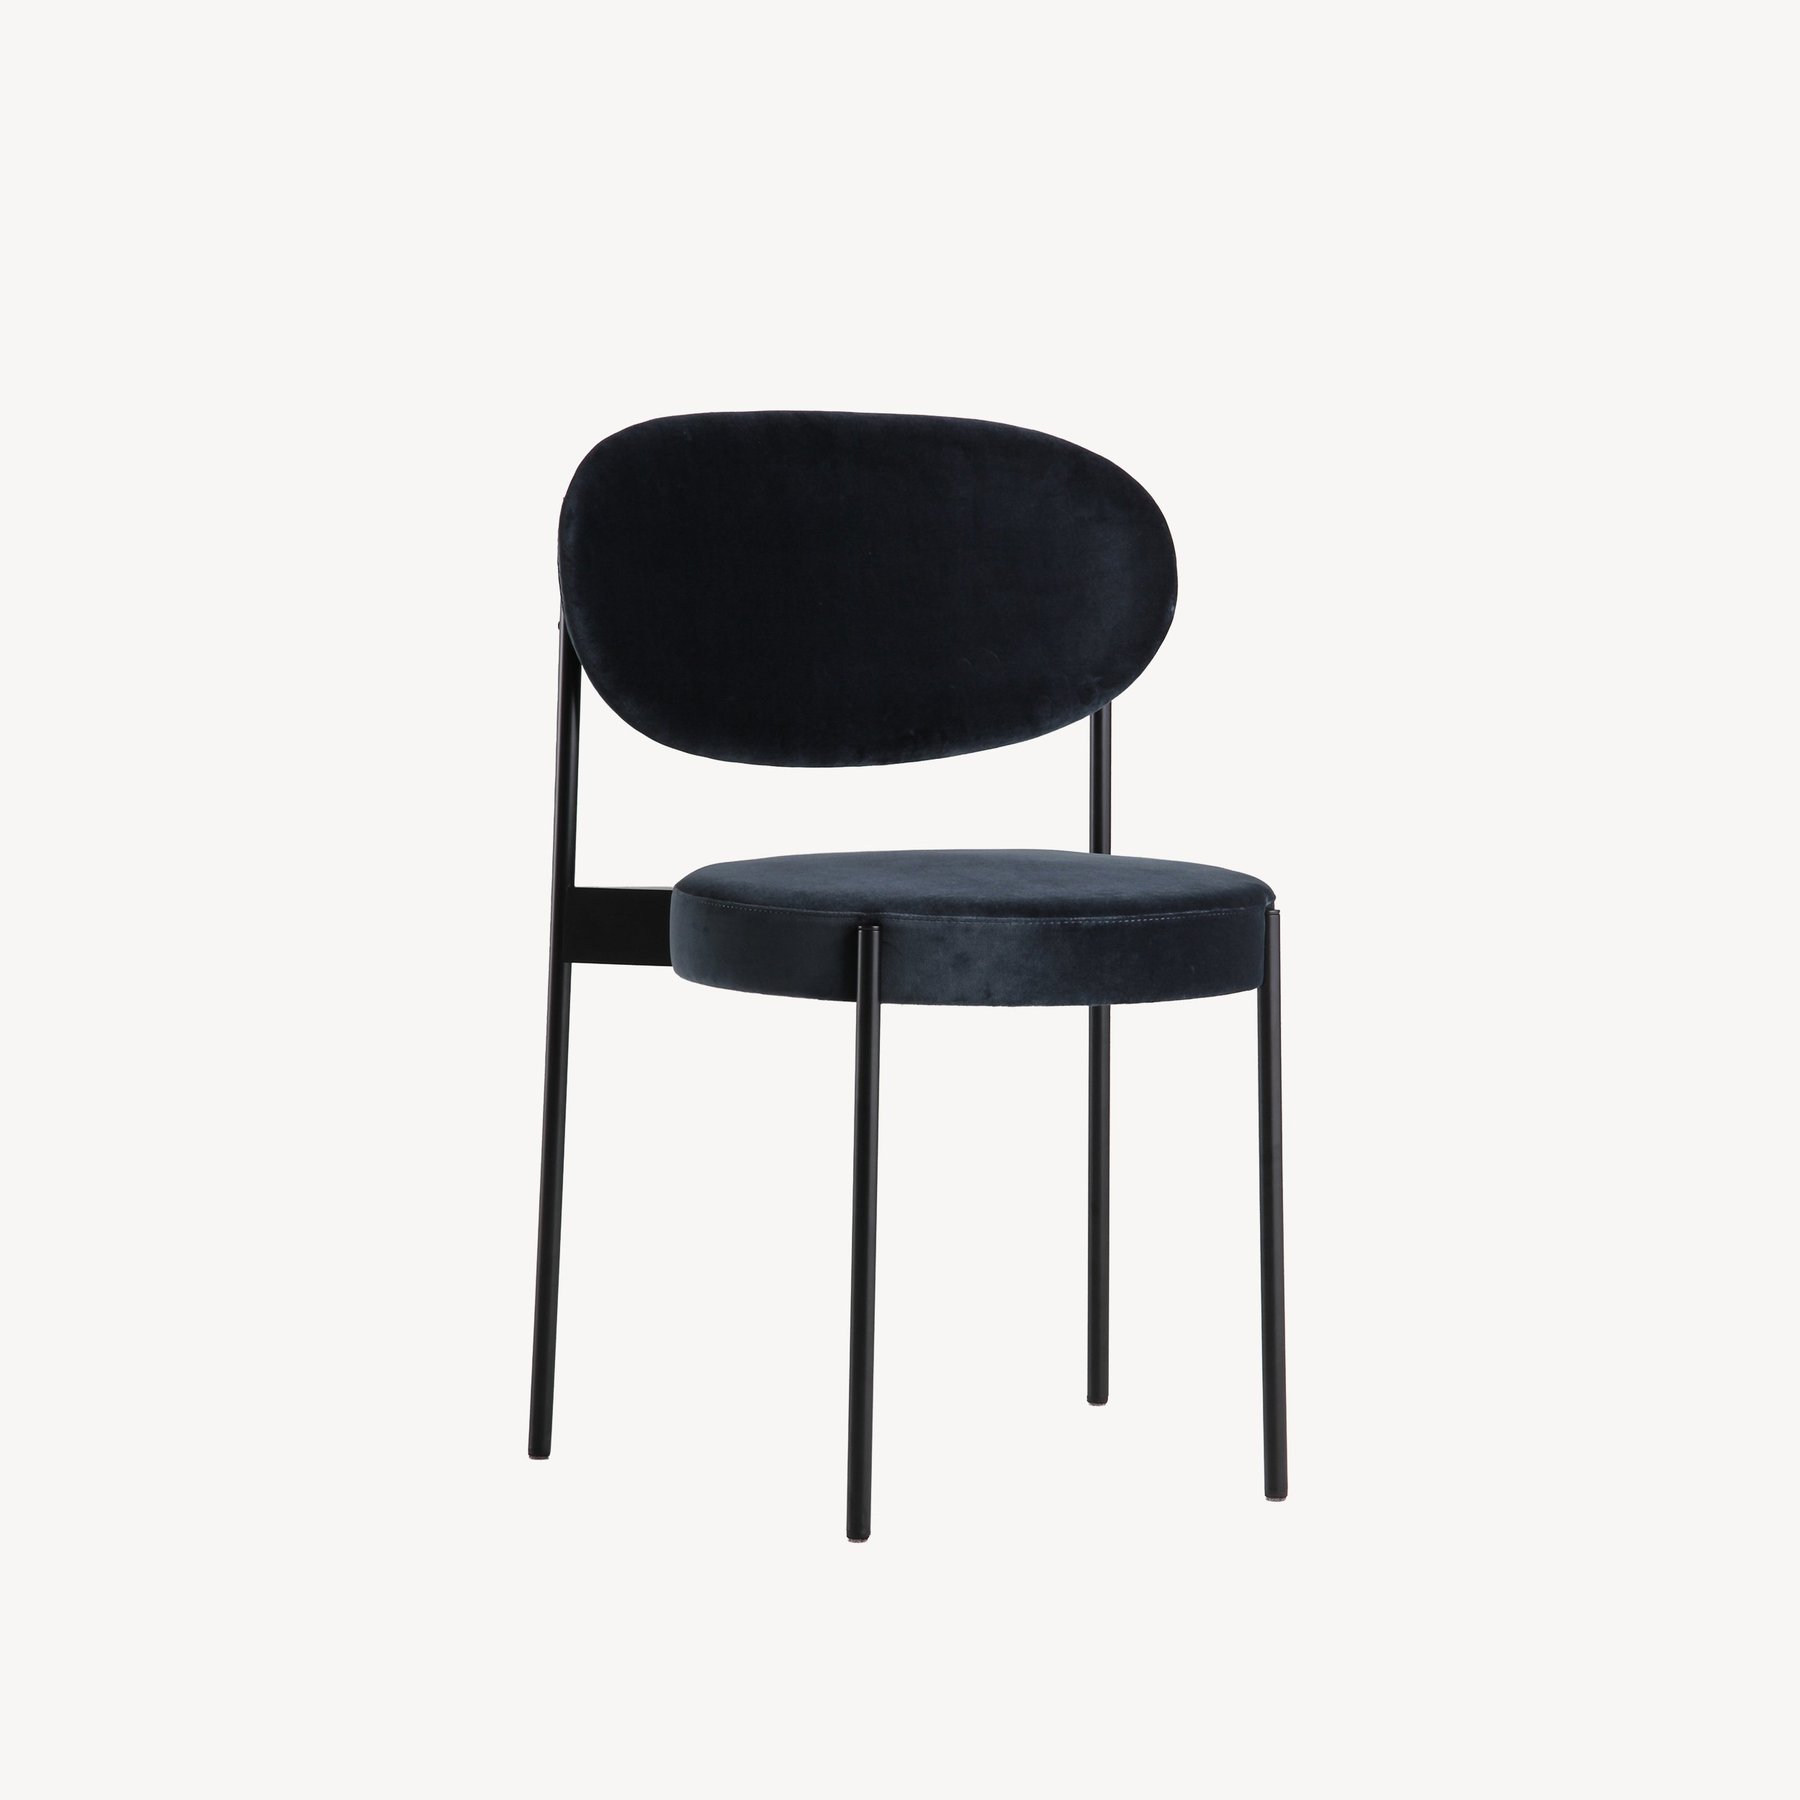 丹麦家具Verpan的SERIES 430 CHAIR BLACK FRAME 餐椅  细节图